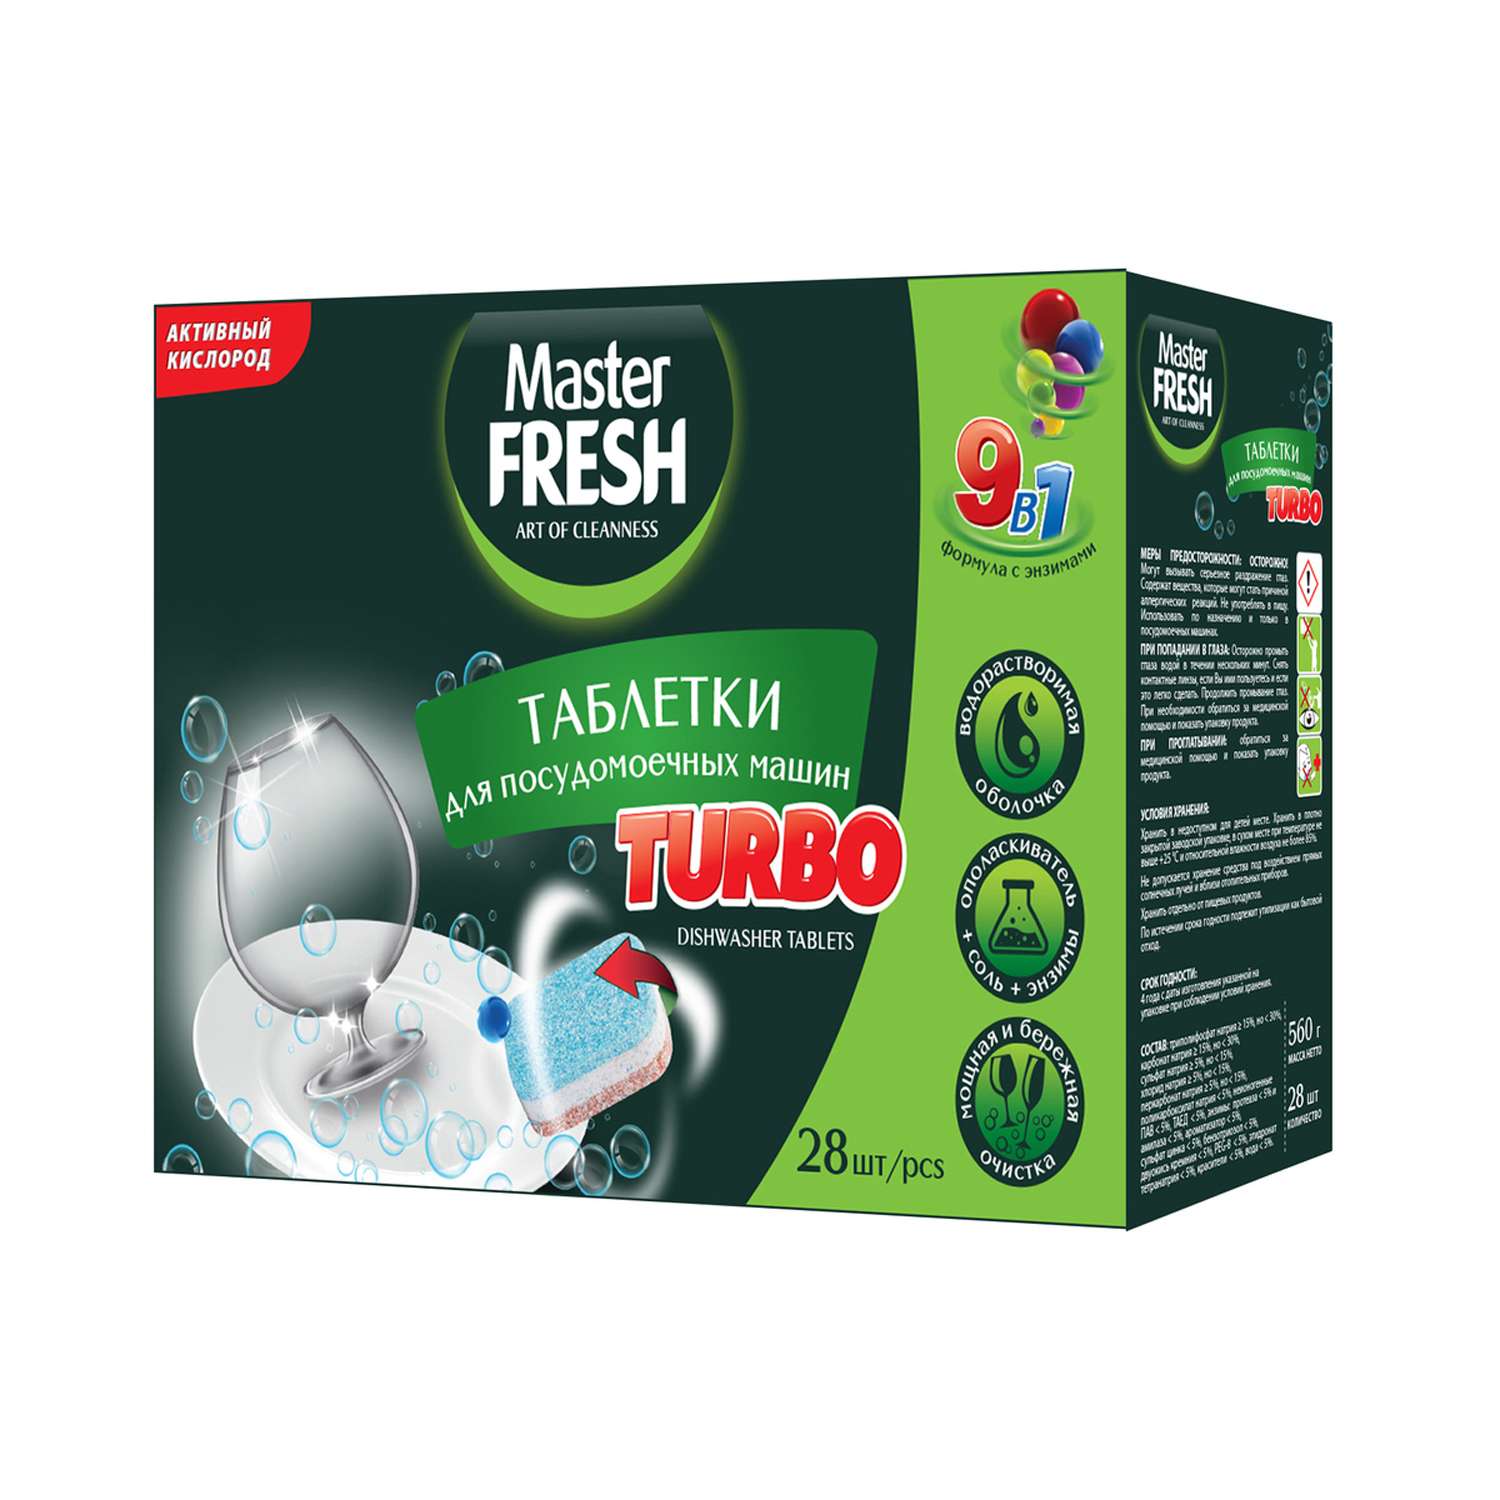 Таблетки Master fresh для посудомоечной машины turbo9-в-1 28 шт - фото 1